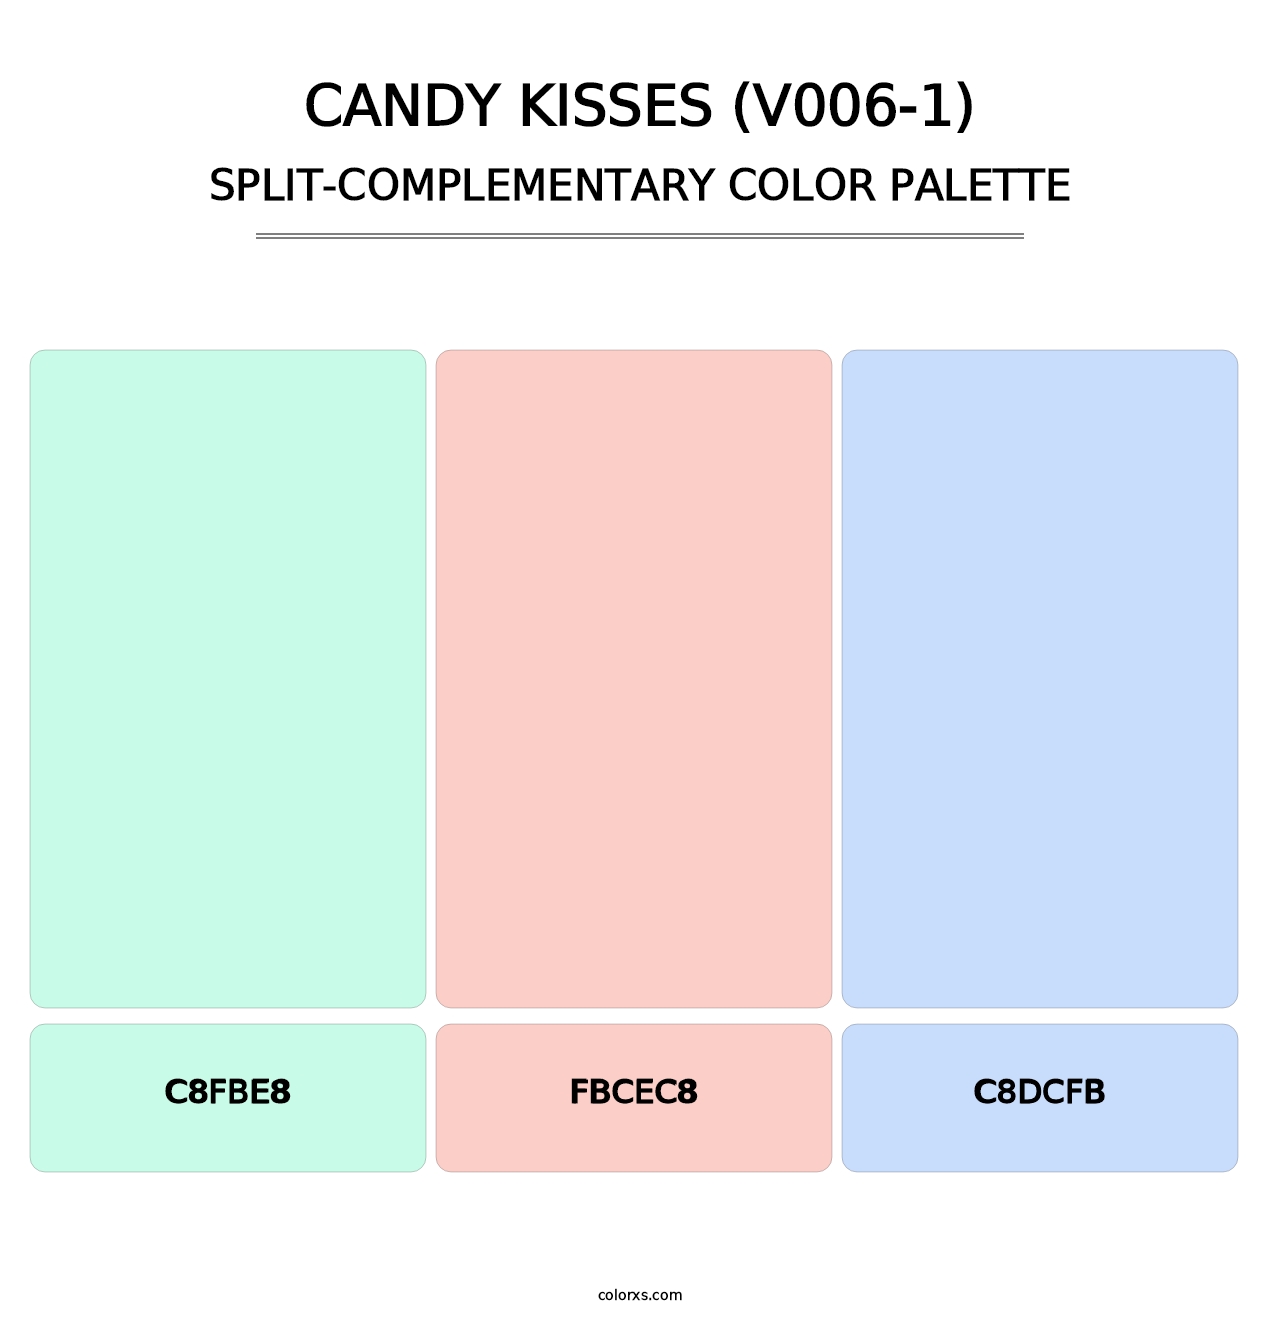 Candy Kisses (V006-1) - Split-Complementary Color Palette